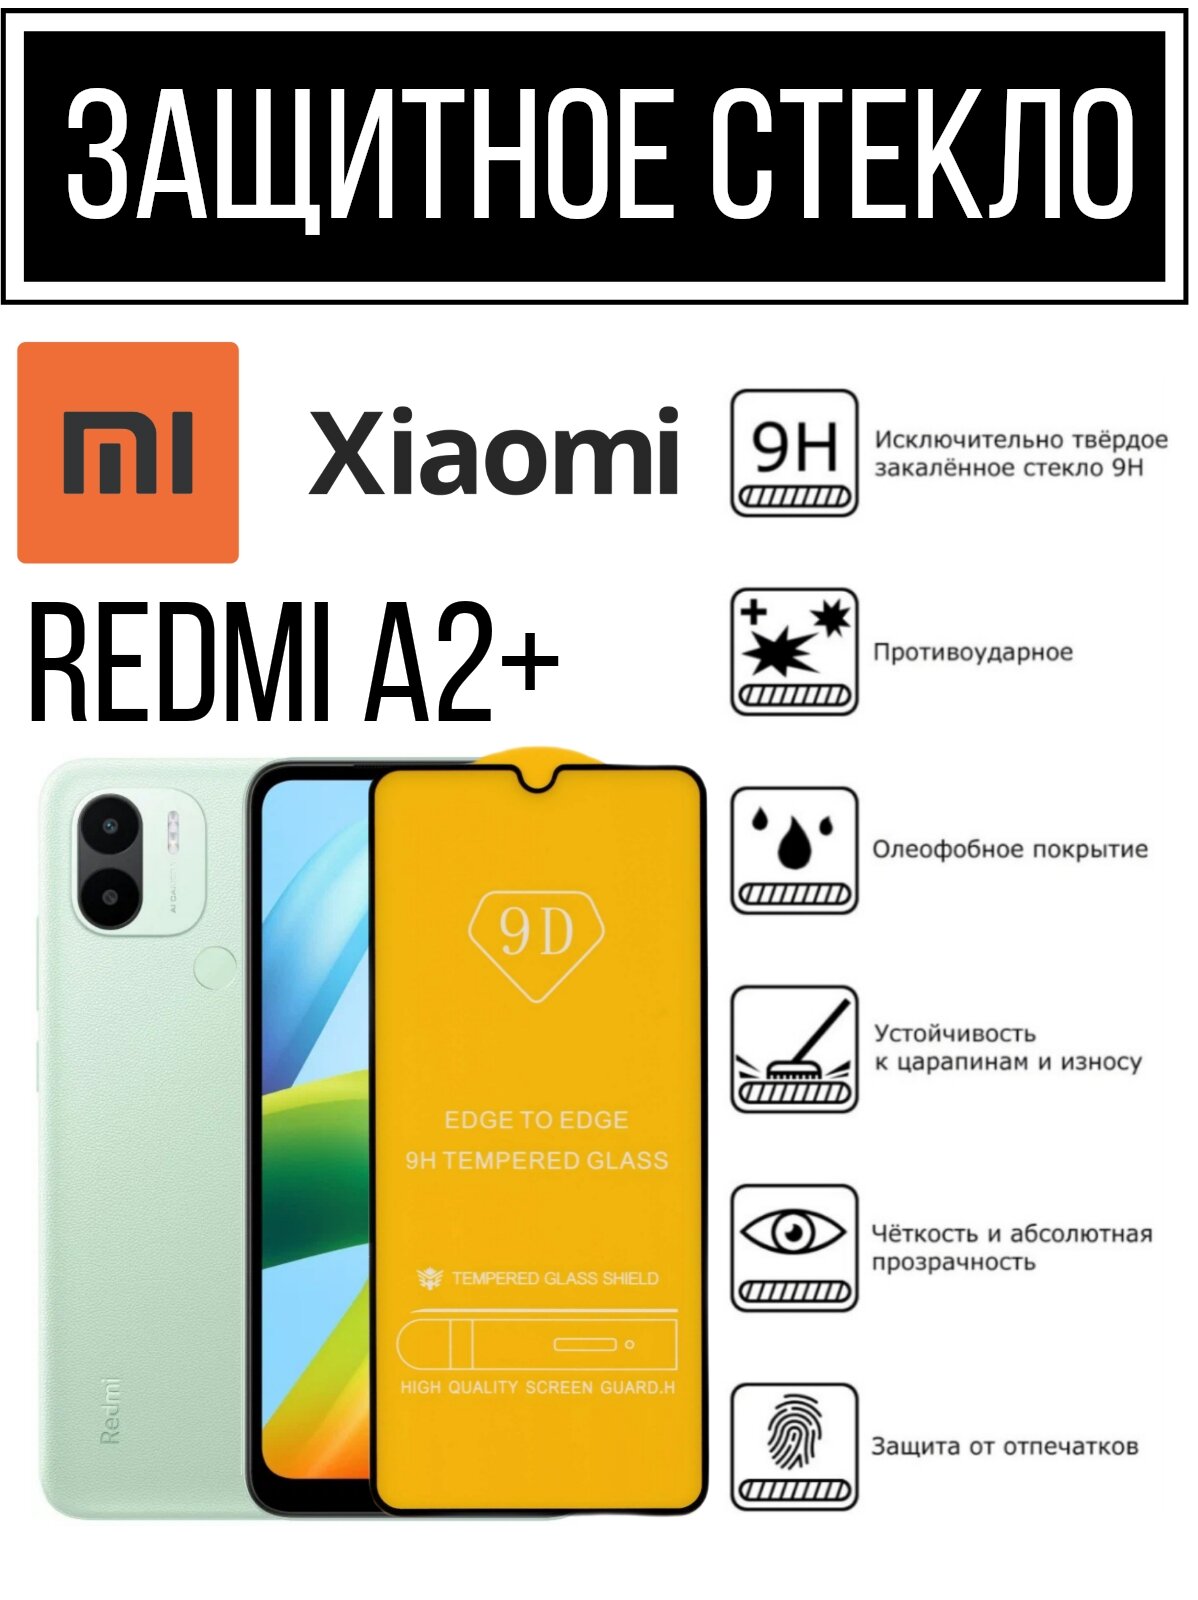 Противоударное закаленное защитное стекло к смартфонам Xiaomi Redmi A2+( Ксиаоми Редми A2+ )